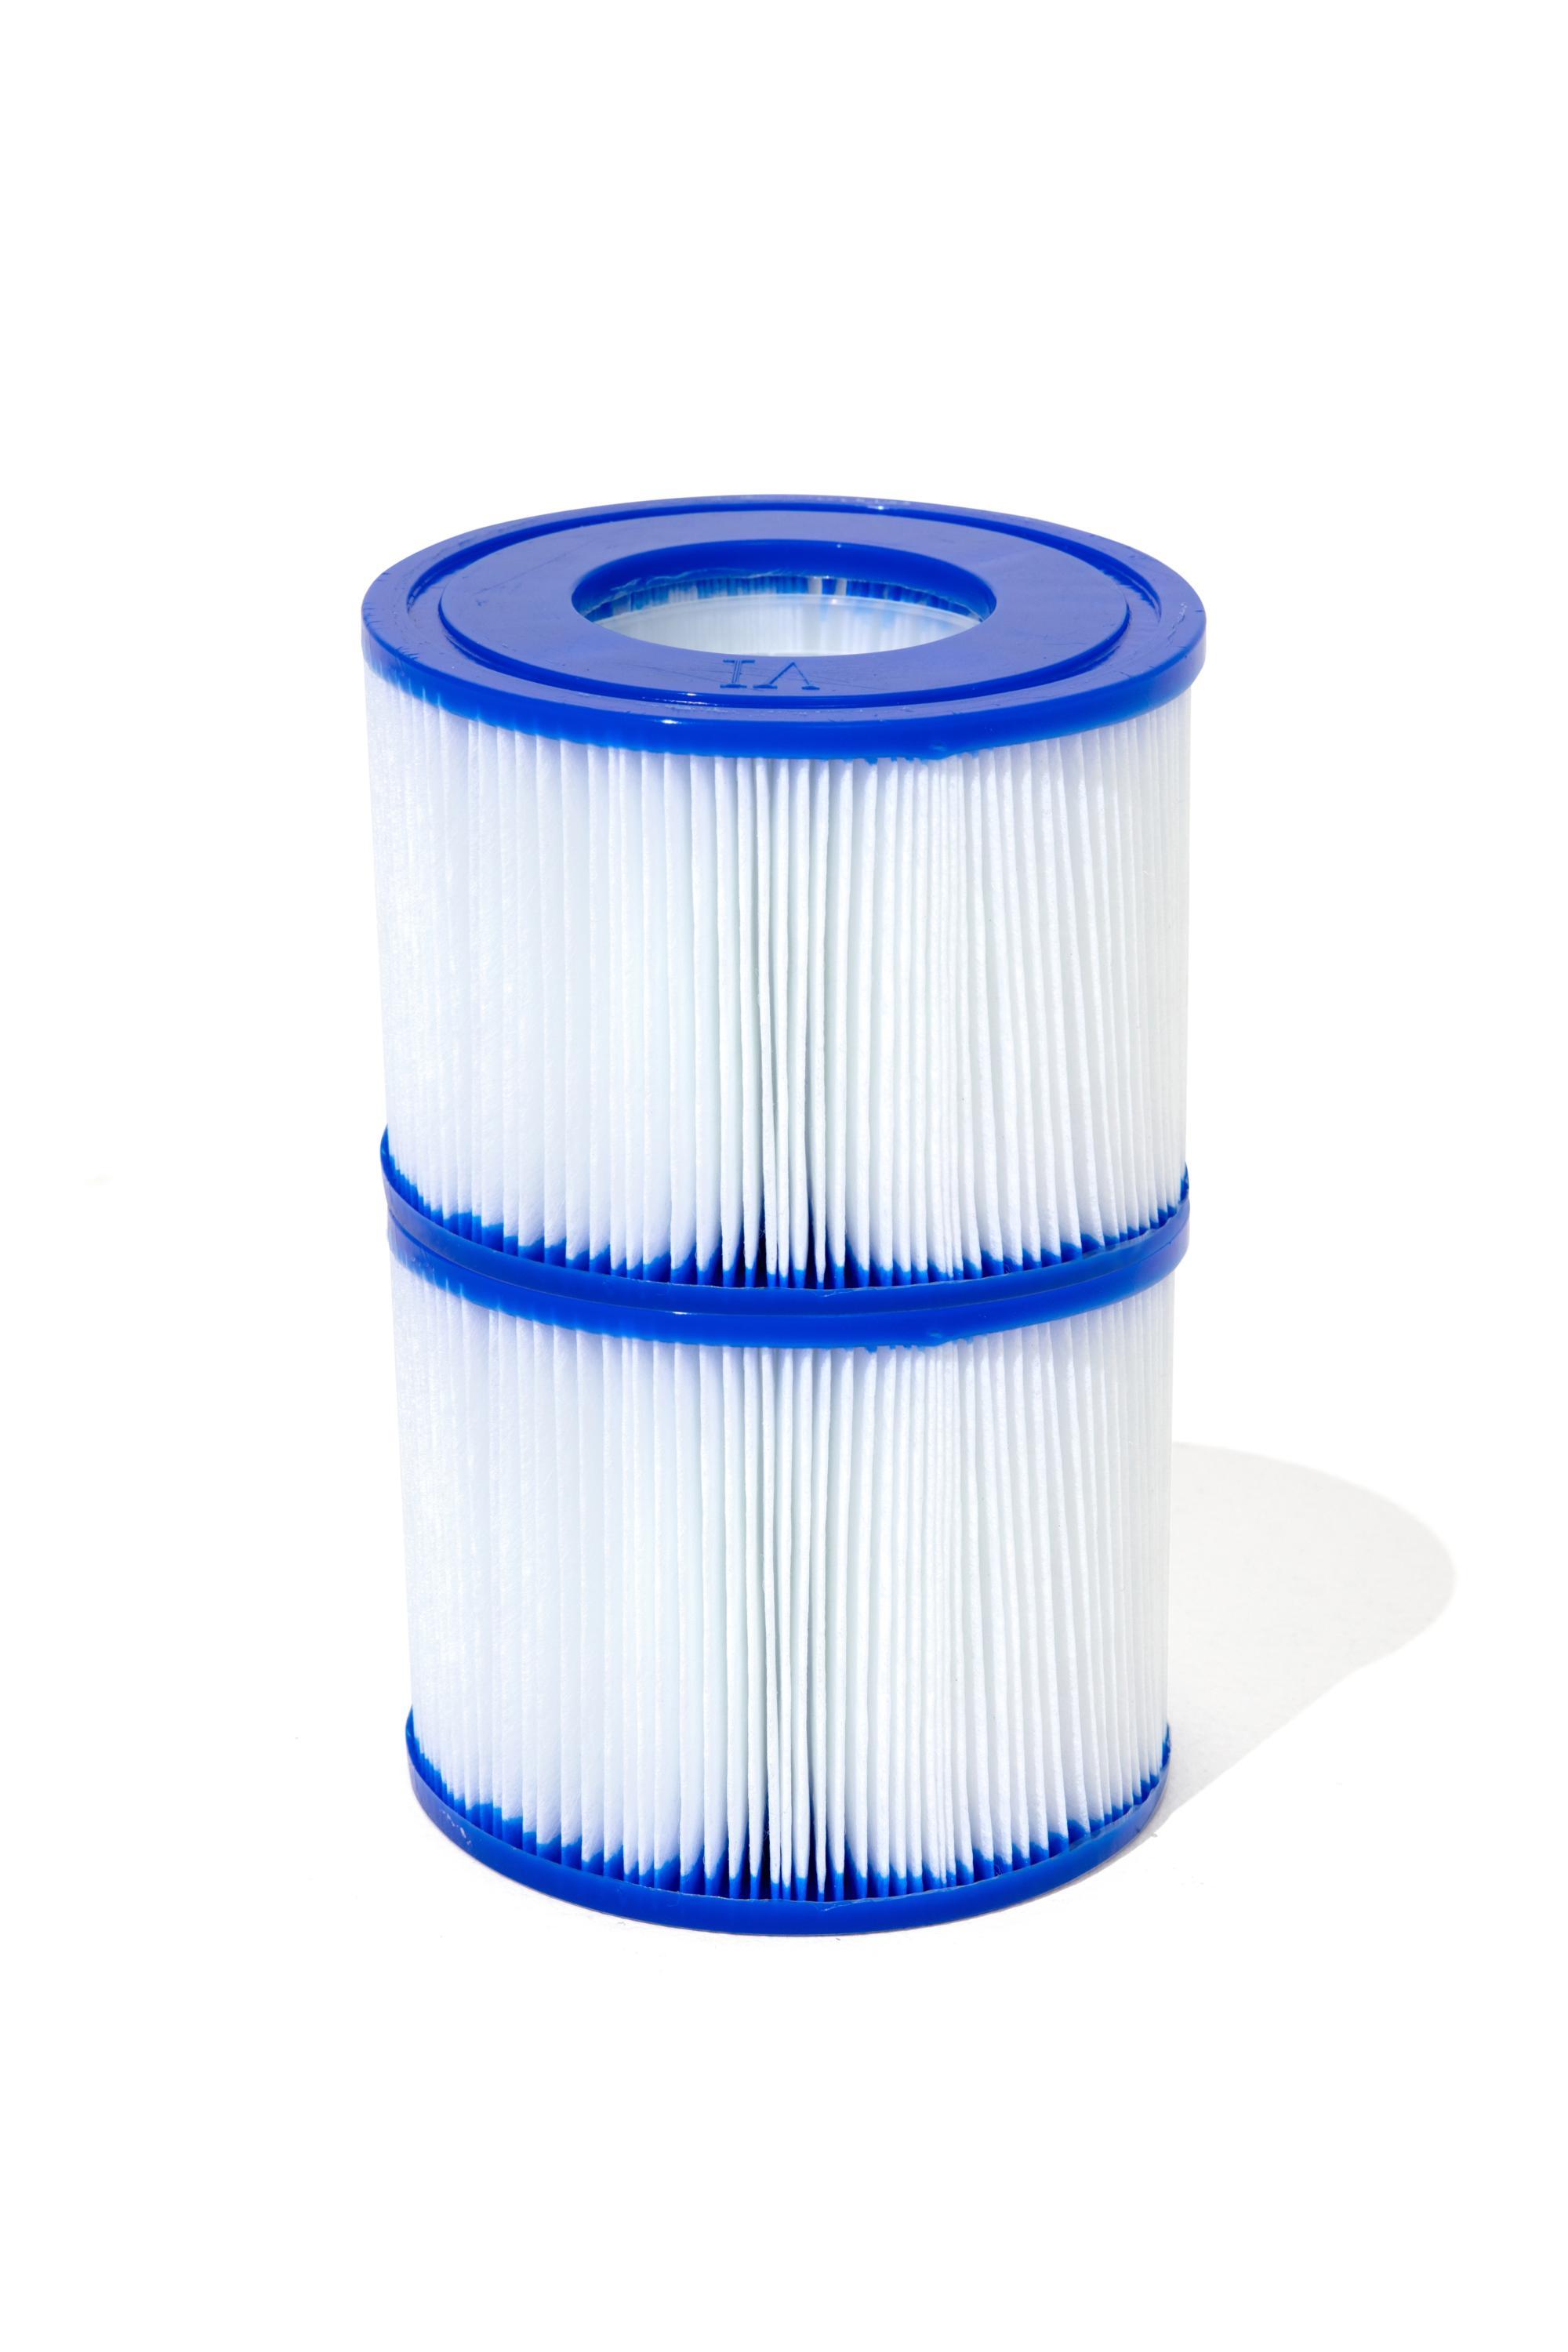 Pool-Filterkartusche aus Kunststoff, Blau/Weiß - Blau/Weiß, MODERN, Kunststoff - Bestway